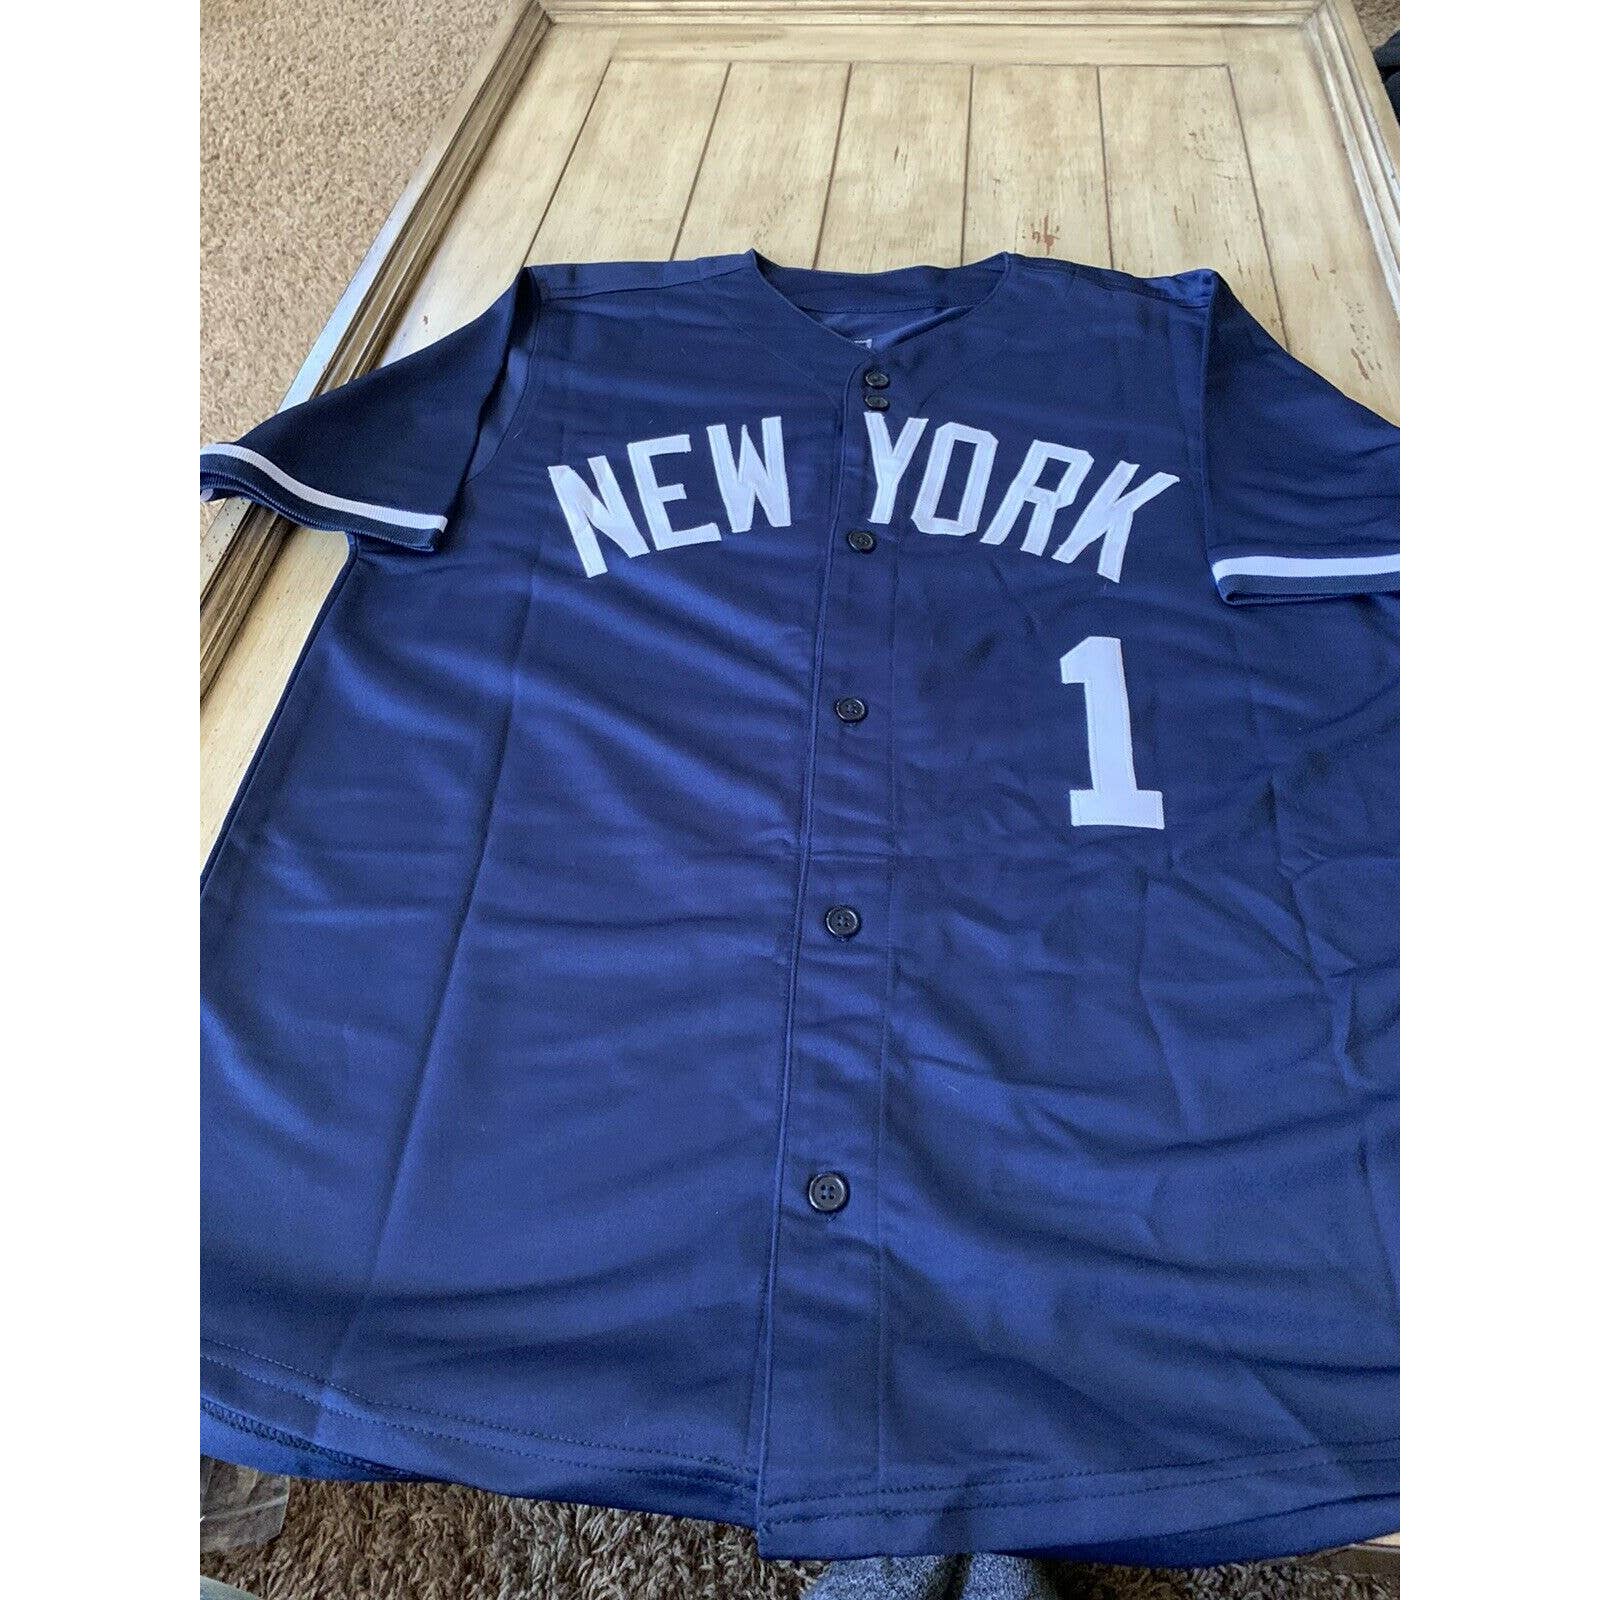 Bobby Richardson Autographed/Signed Jersey JSA COA New York Yankees - TreasuresEvolved